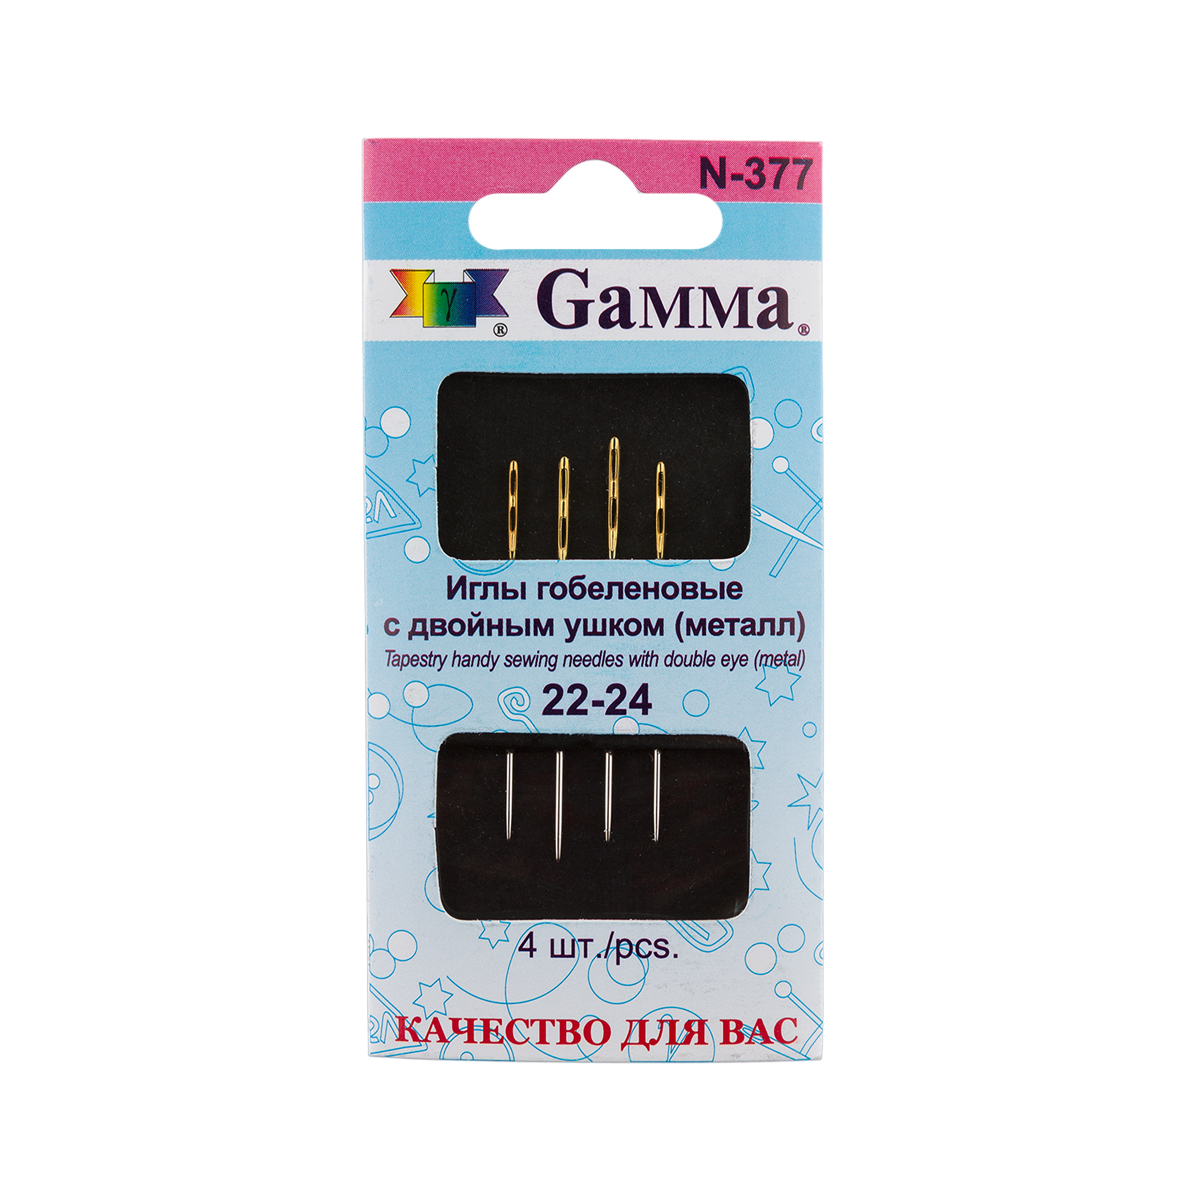 Иглы для шитья ручные Gamma N-377 гобеленовые №22-24 с двойным ушком 4 шт. в конверте с прозрачным дисплеем